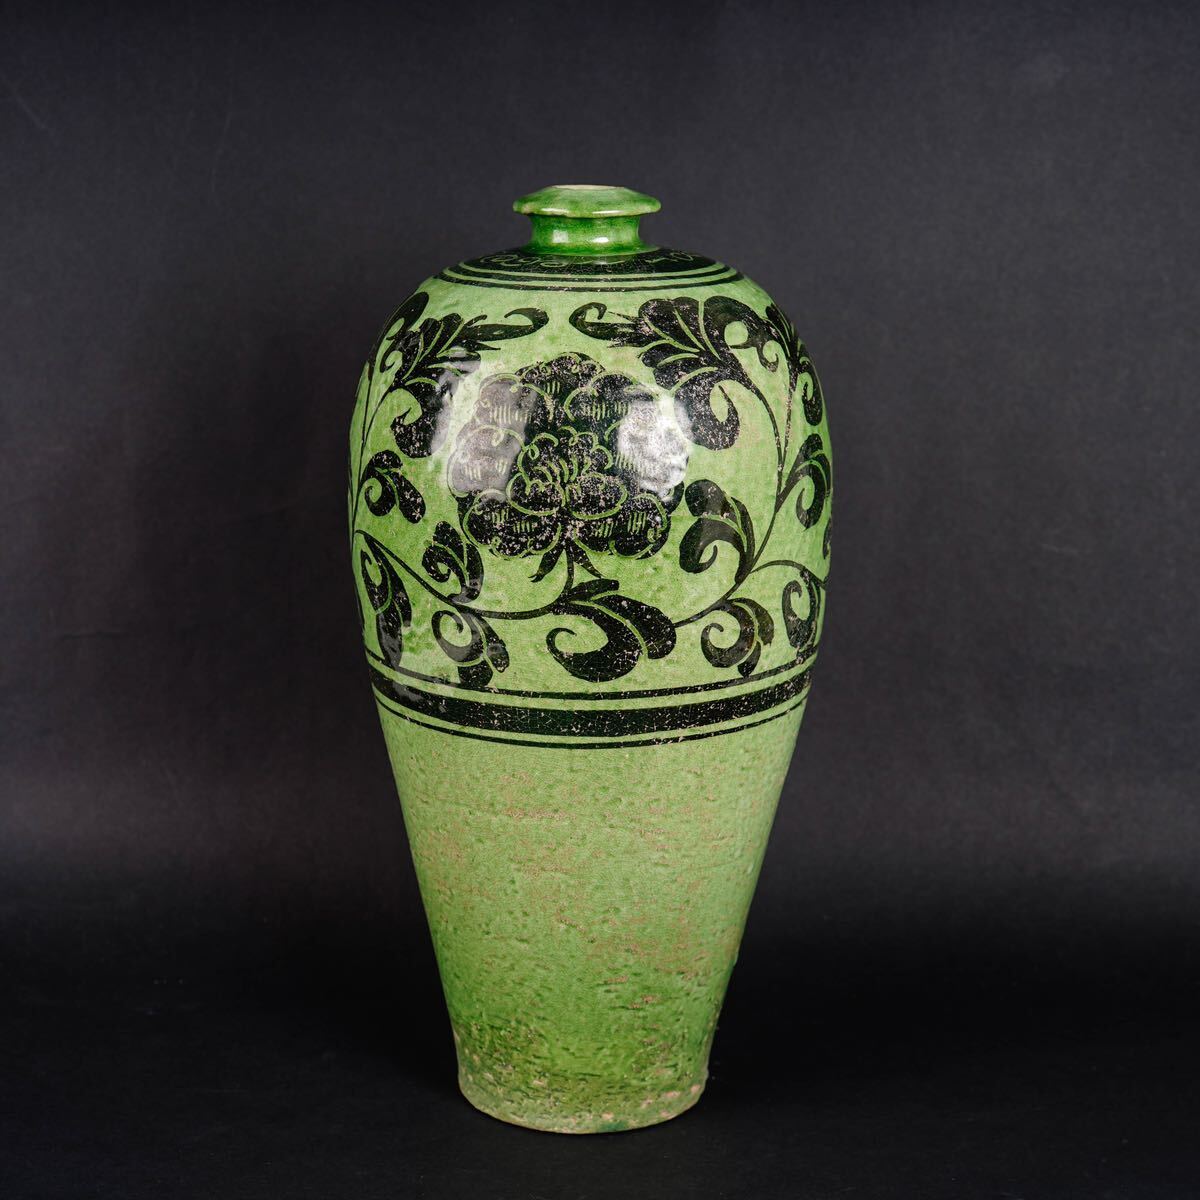 【後】HI001 綠地黑彩花卉文梅瓶 古美術 骨董品 古玩 時代物 古道具 中国美術品 朝鮮美術品 日本美術品の画像1